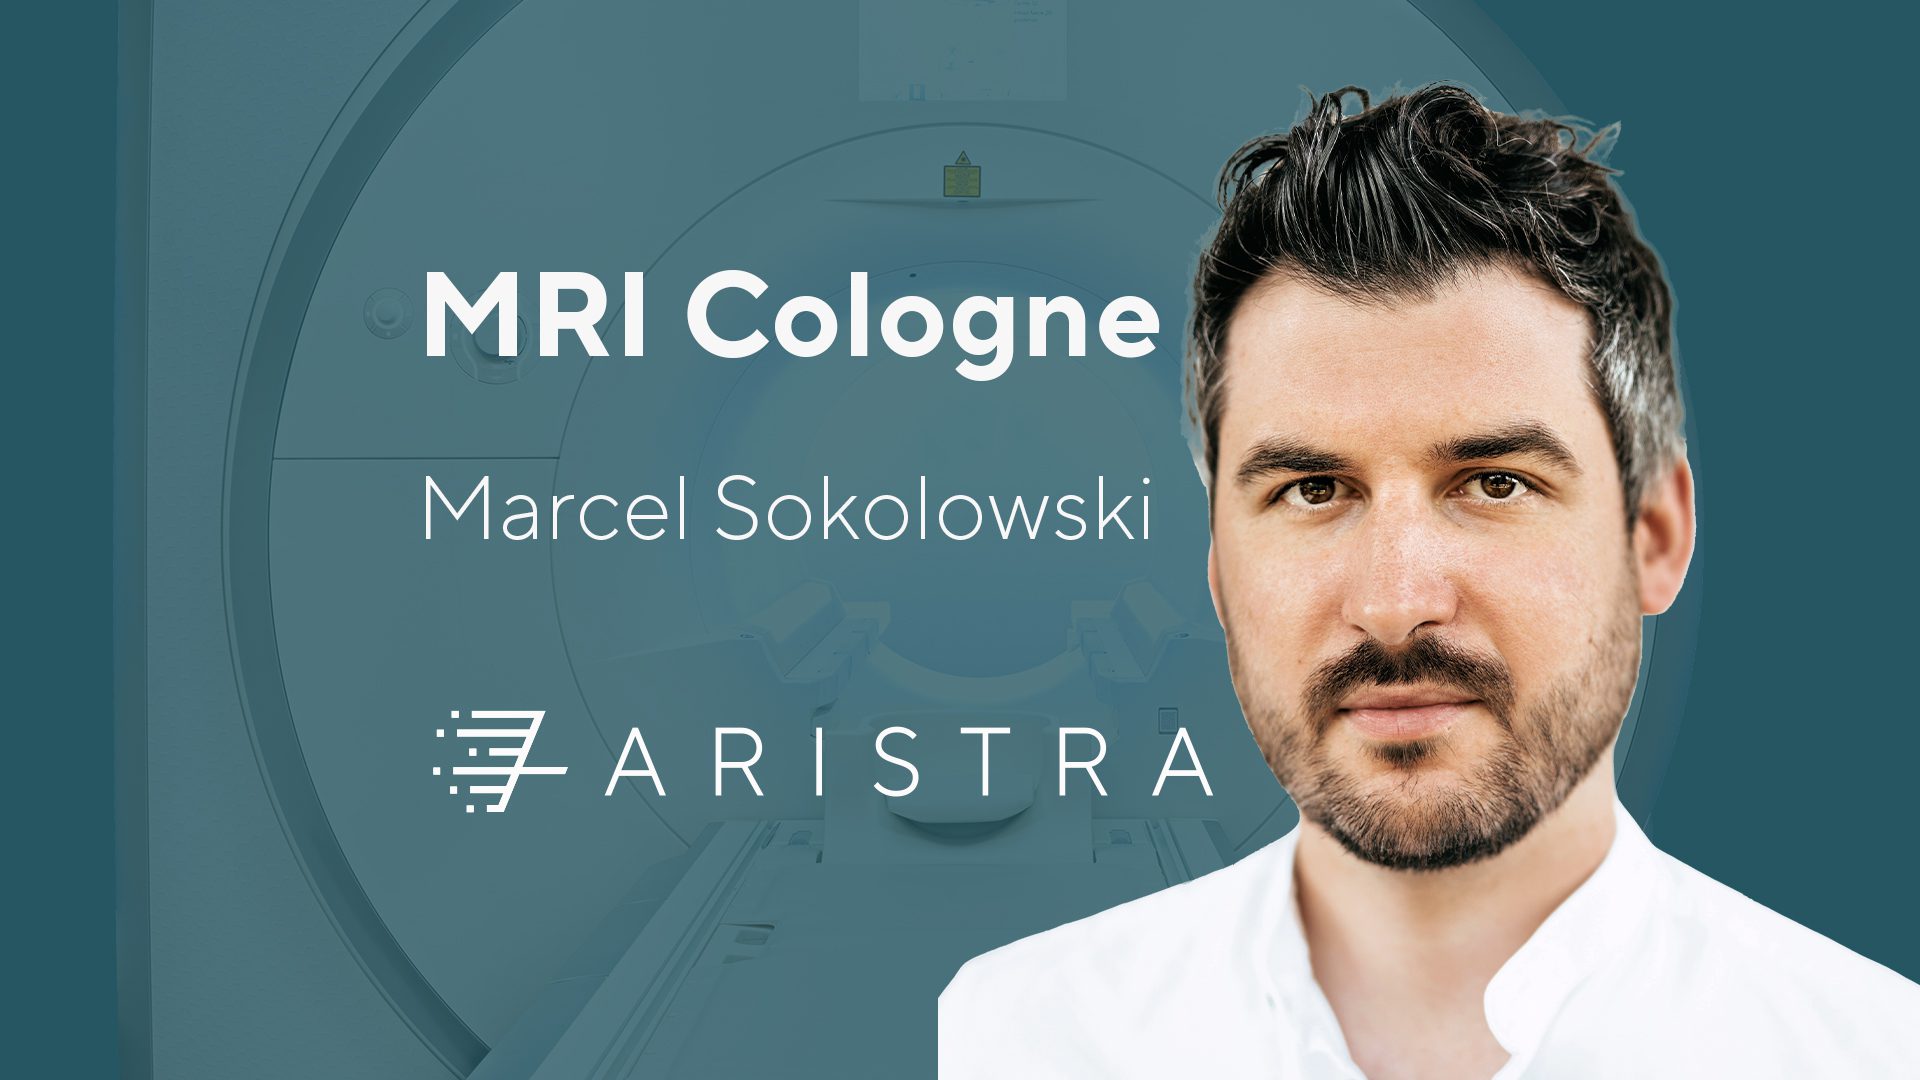 ARISTRA MRI Cologne – Private practice Marcel Sokolowski